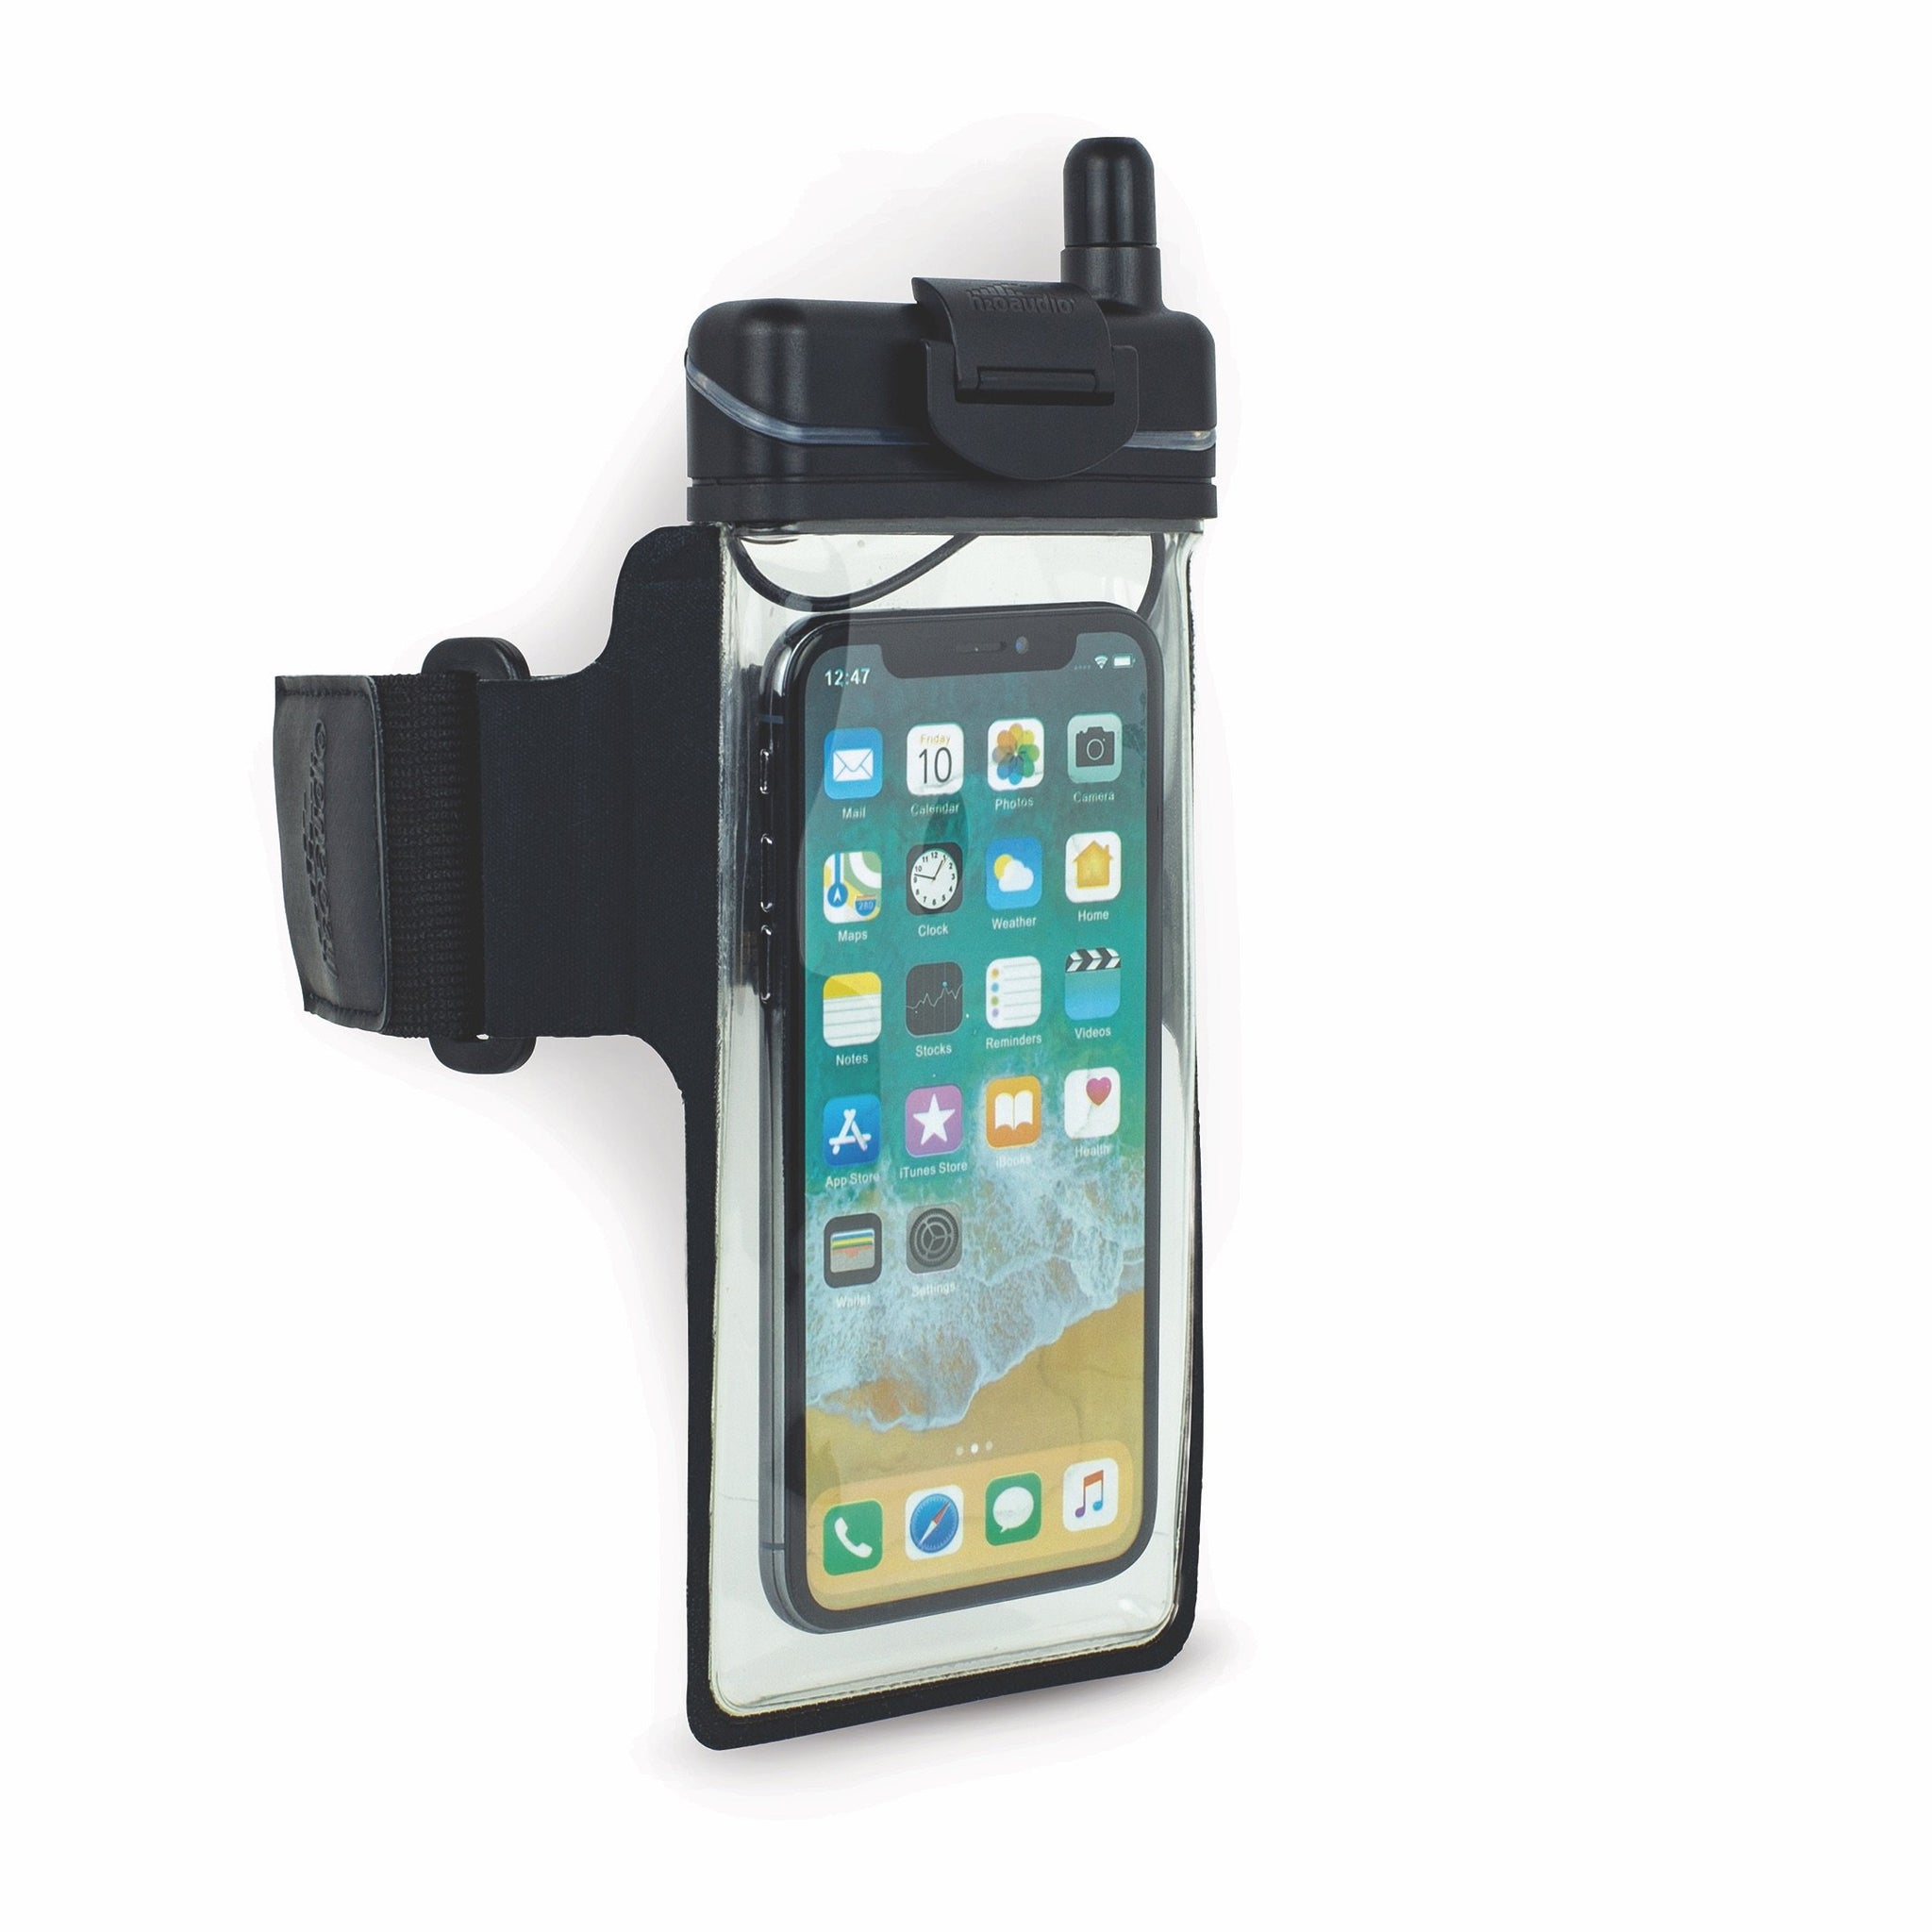 Onzorgvuldigheid Vesting verhouding Waterproof armband. Waterproof iPhone case. waterproof smartphone case -  H2O Audio